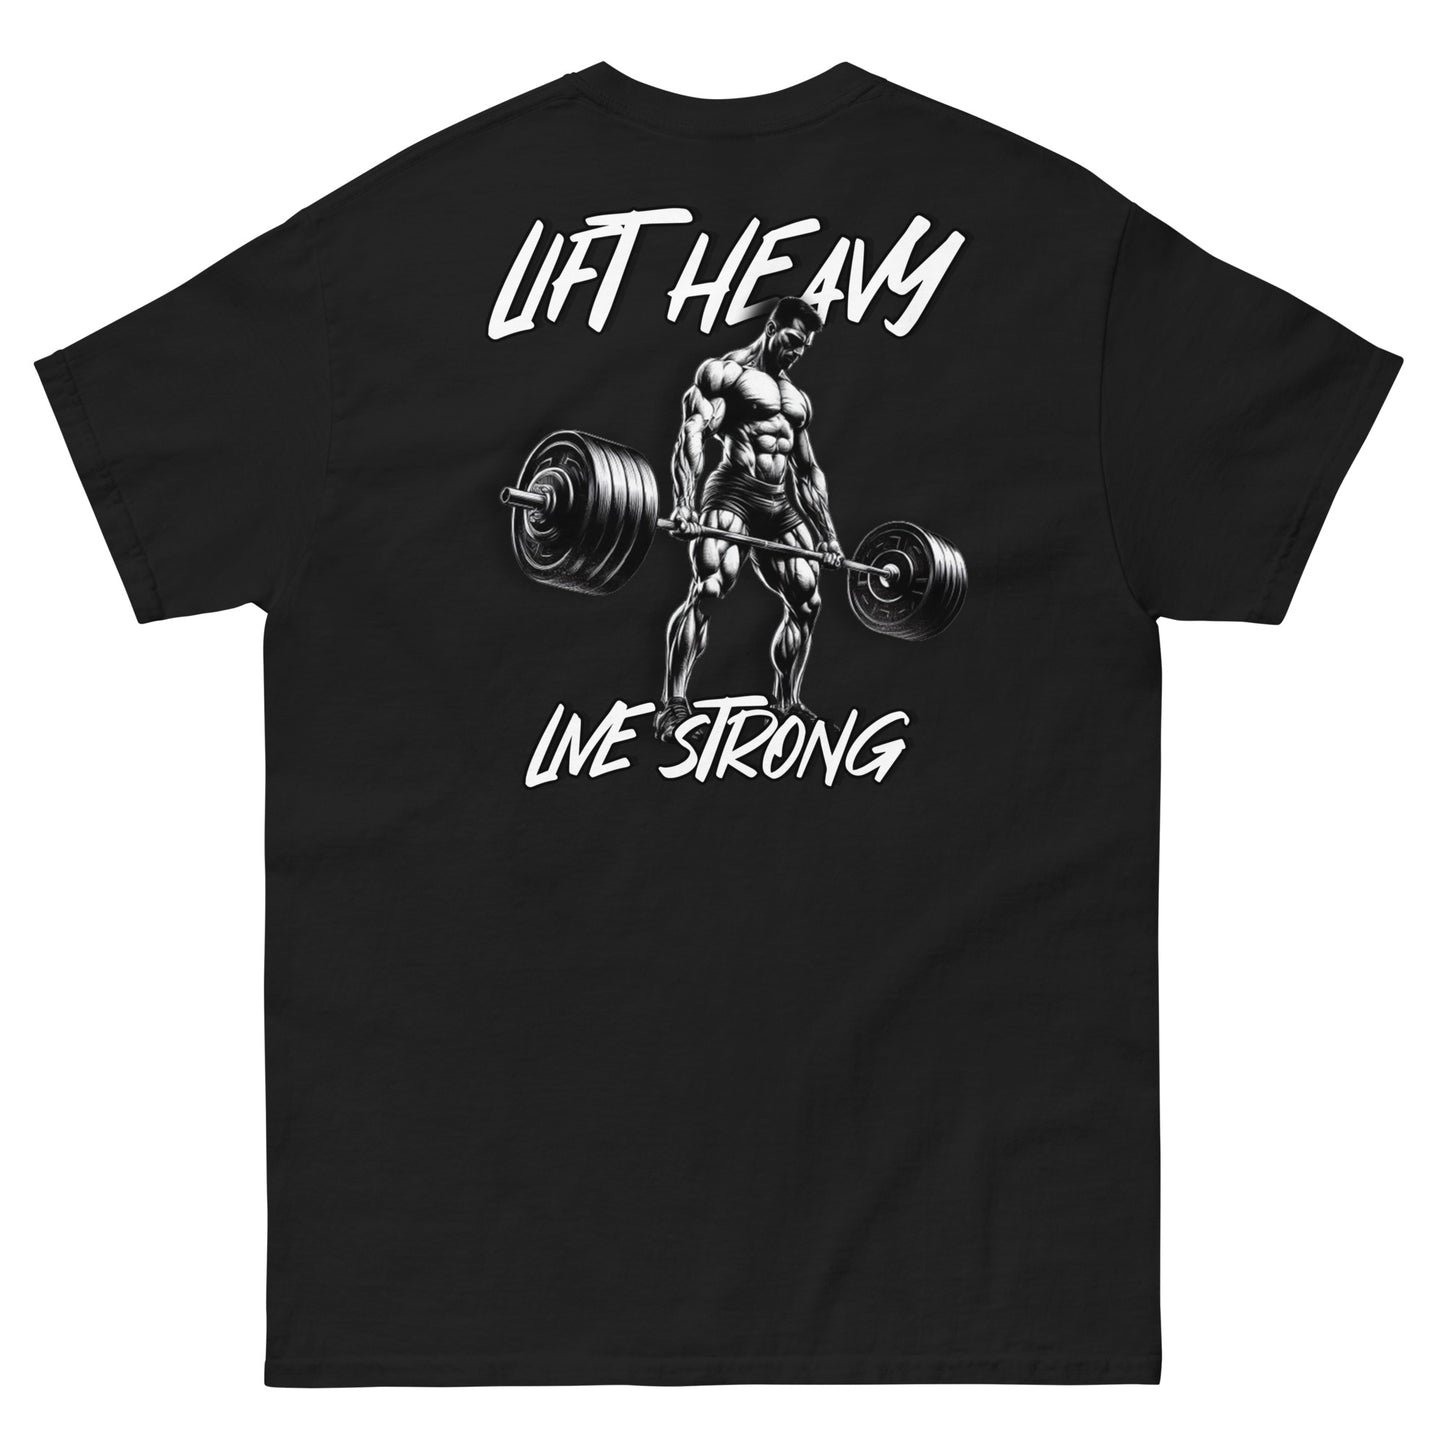 "Lift heavy" - Classic T-Shirt